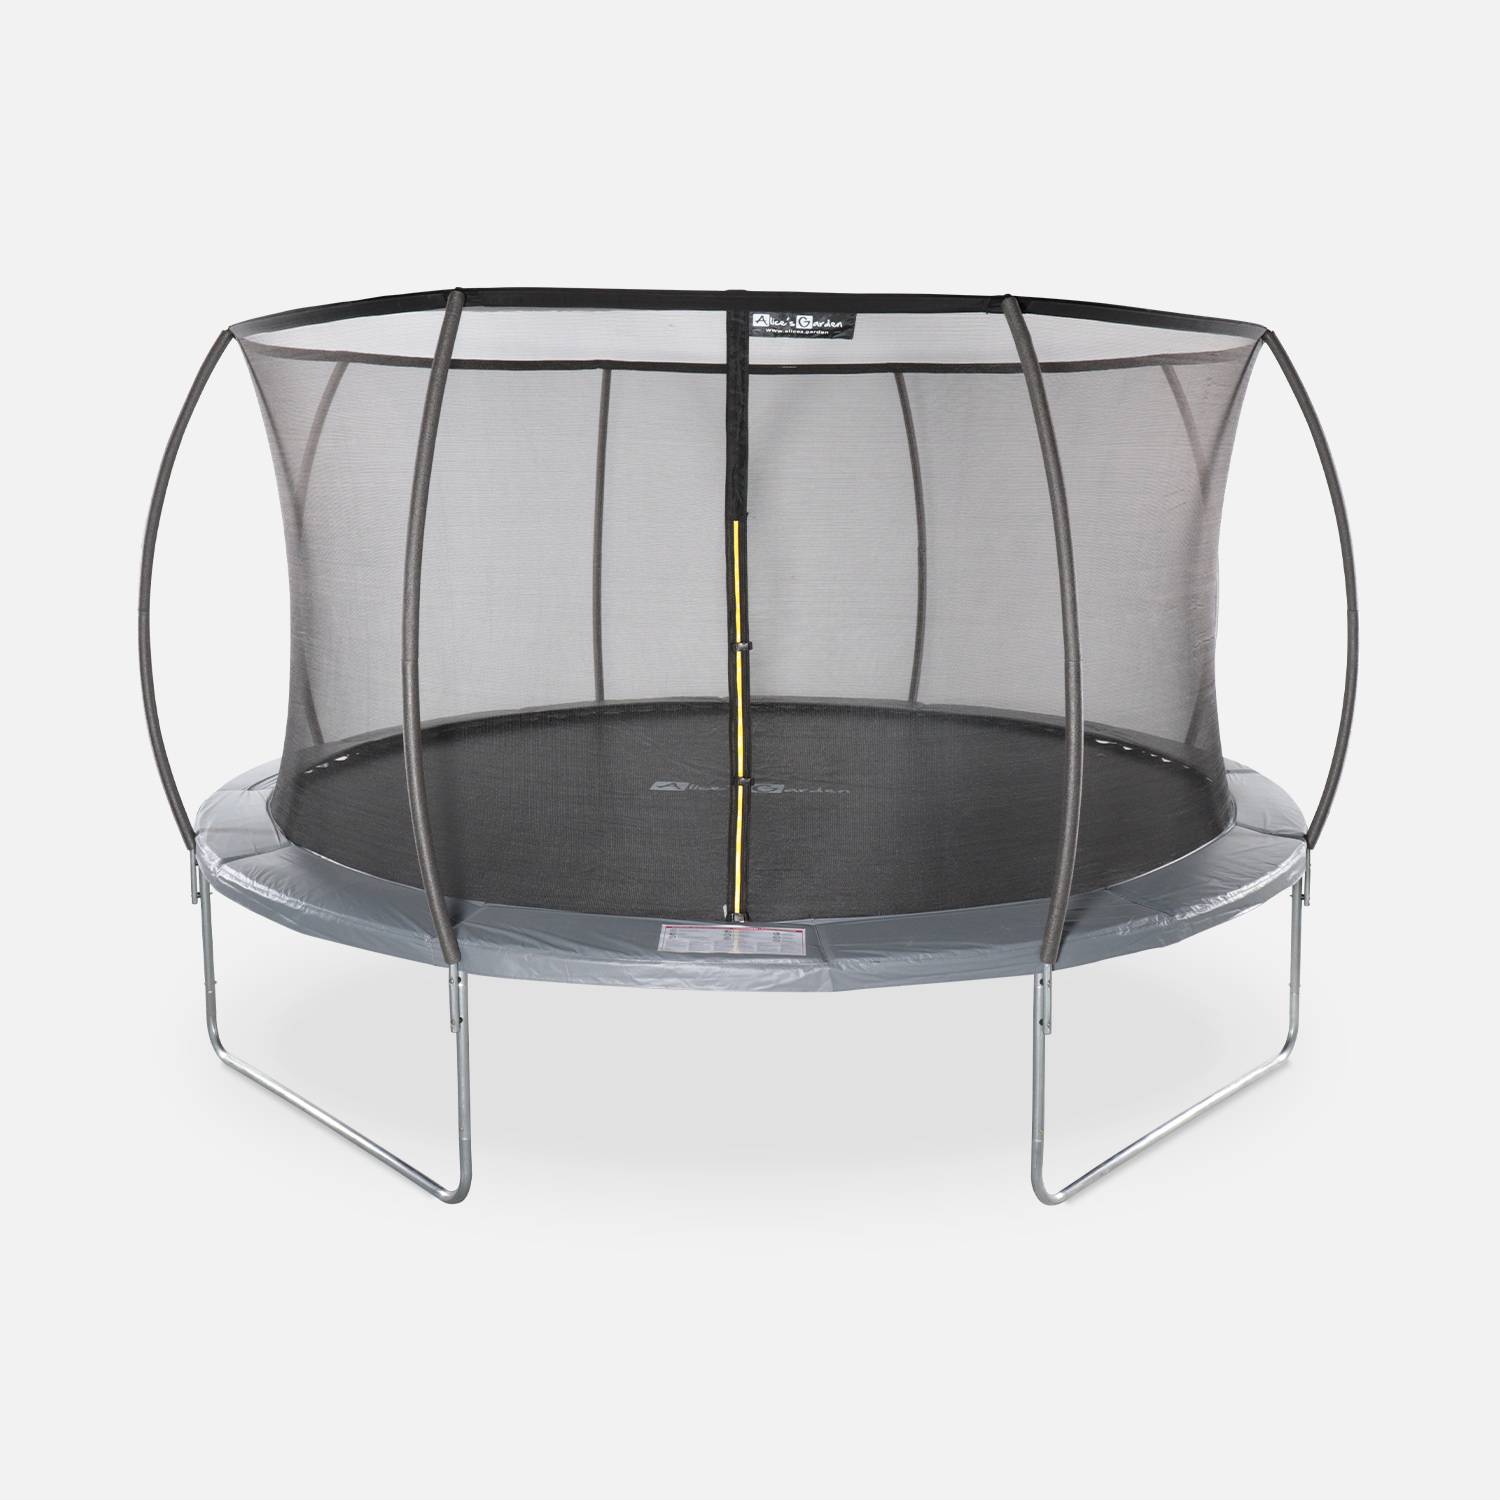 Trampolim redondo Ø 430cm cinza com rede de segurança interna - Venus Inner - Novo modelo - trampolim de jardim 4,30m 430 cm | Qualidade PRO. | Normas da UE. Photo1